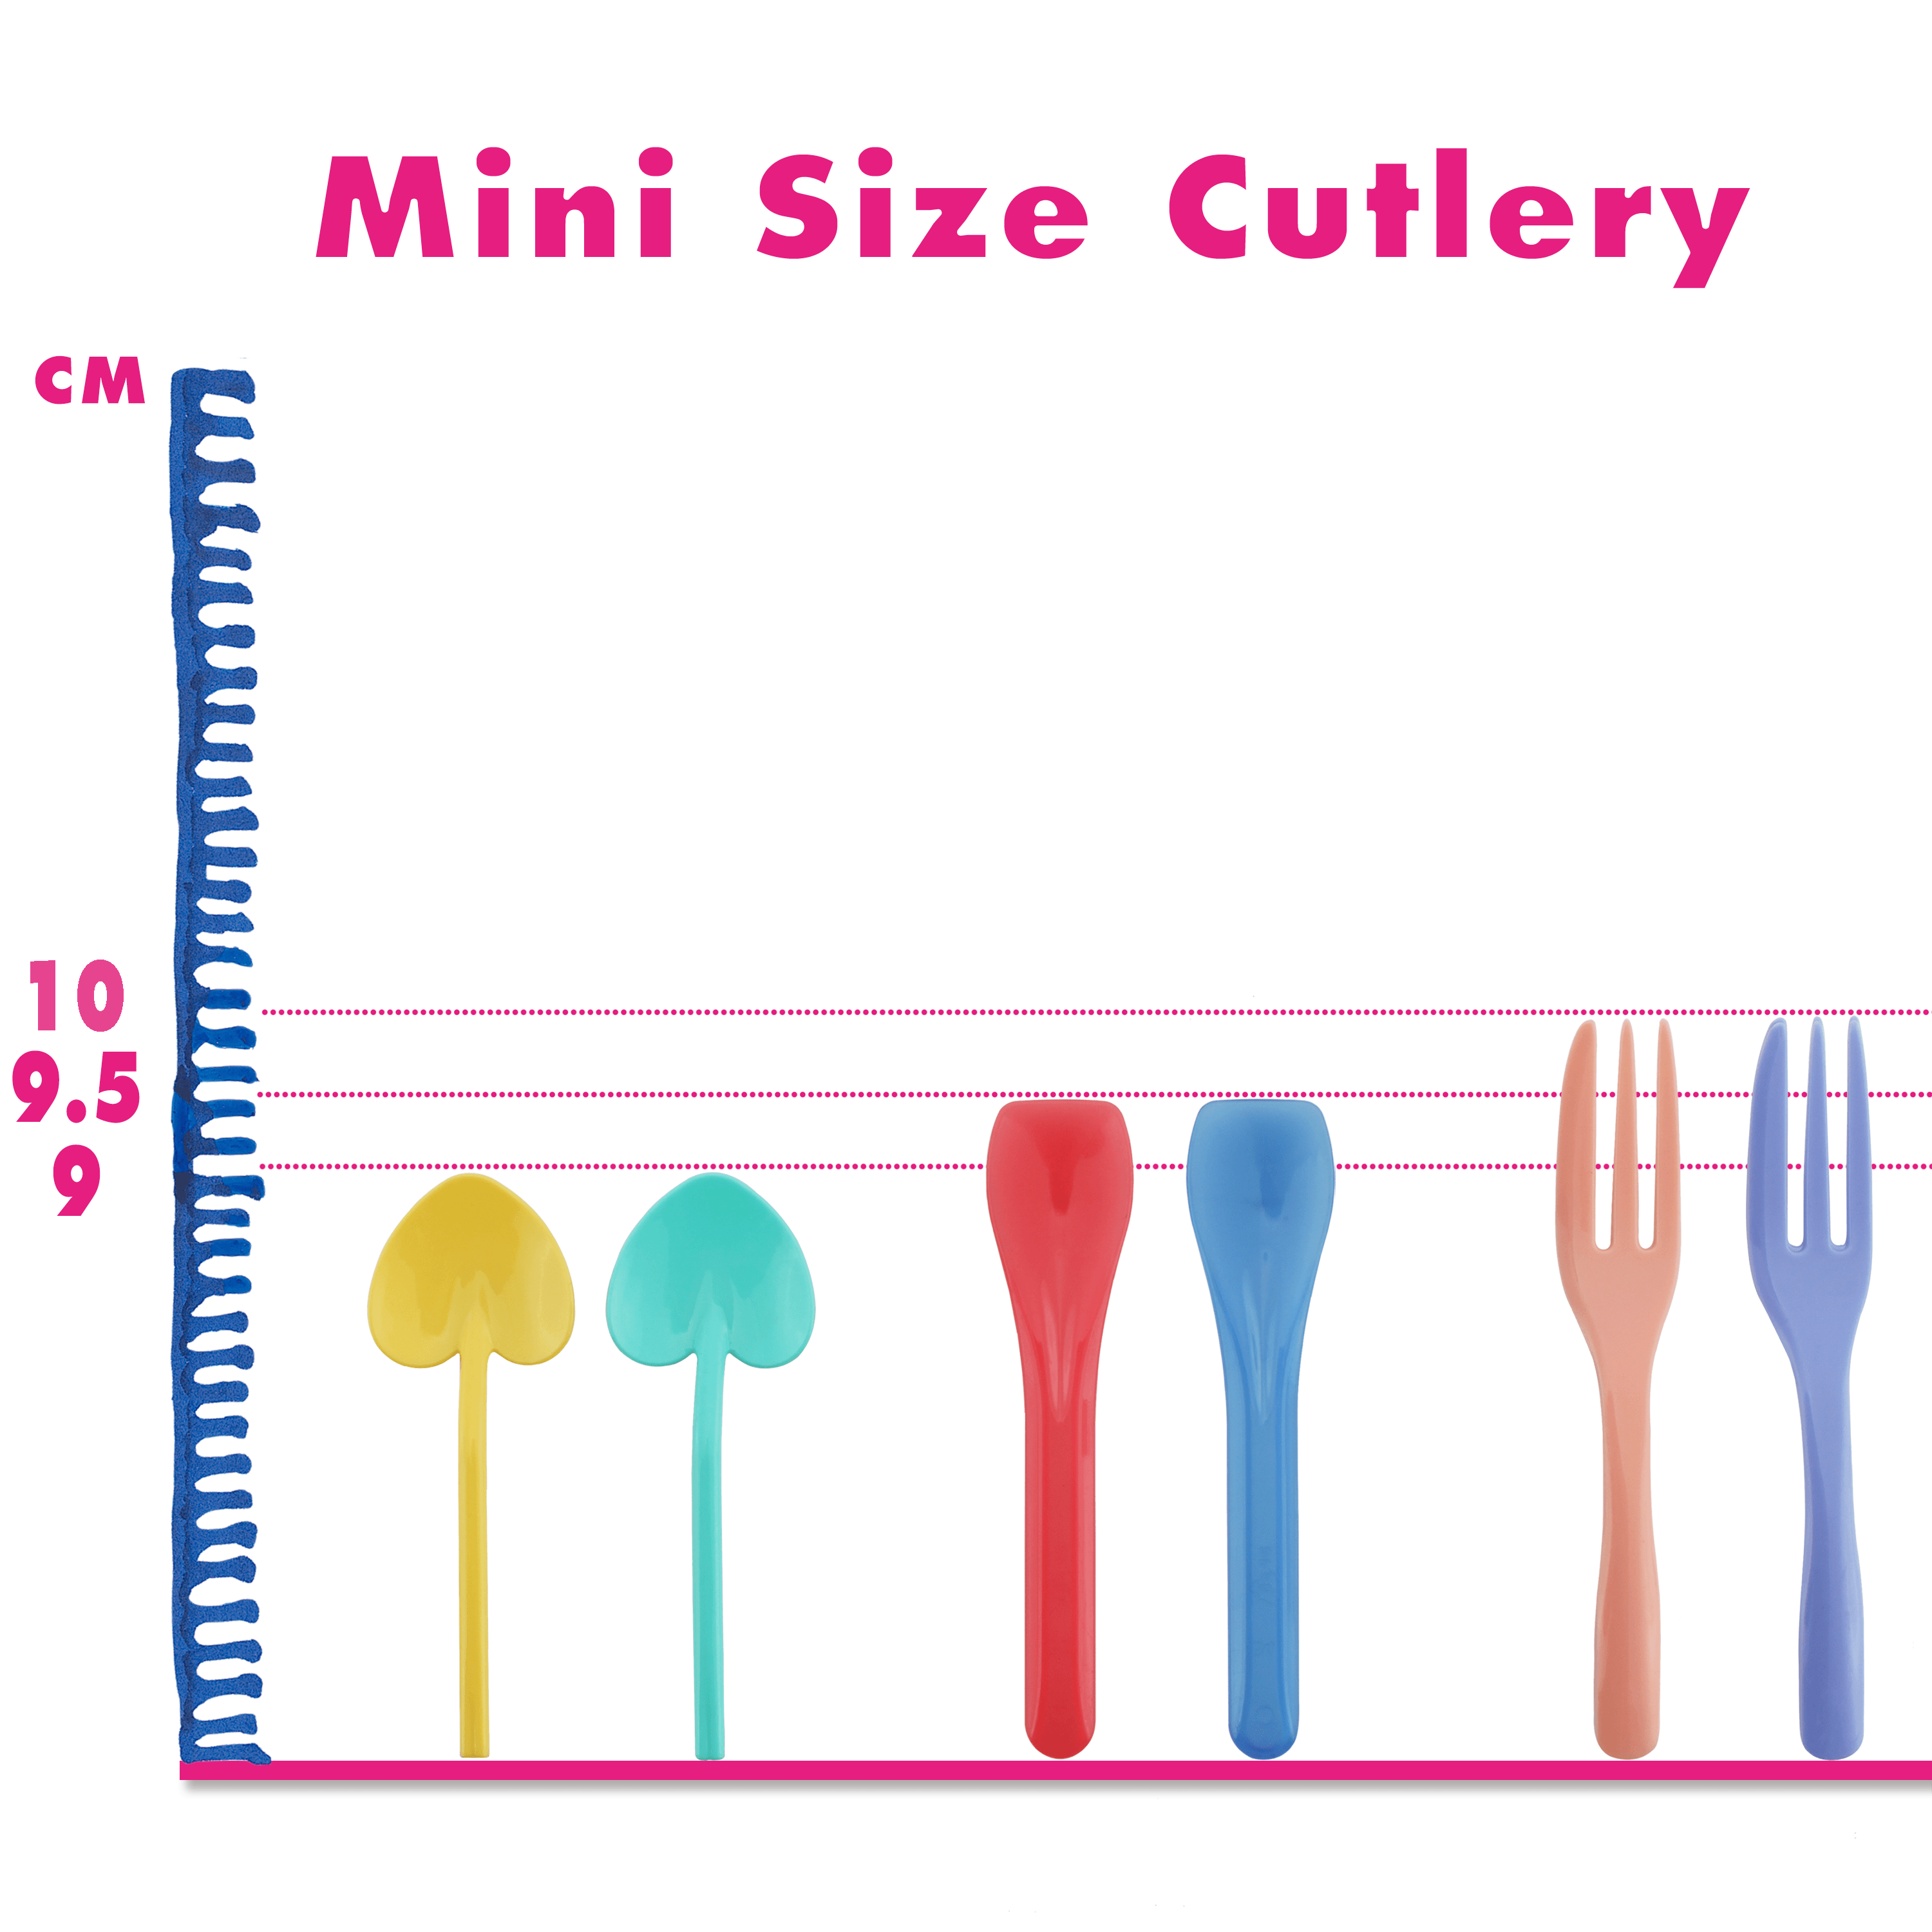 7-10cm Mini Plastik Çatal-Bıçak Takımı